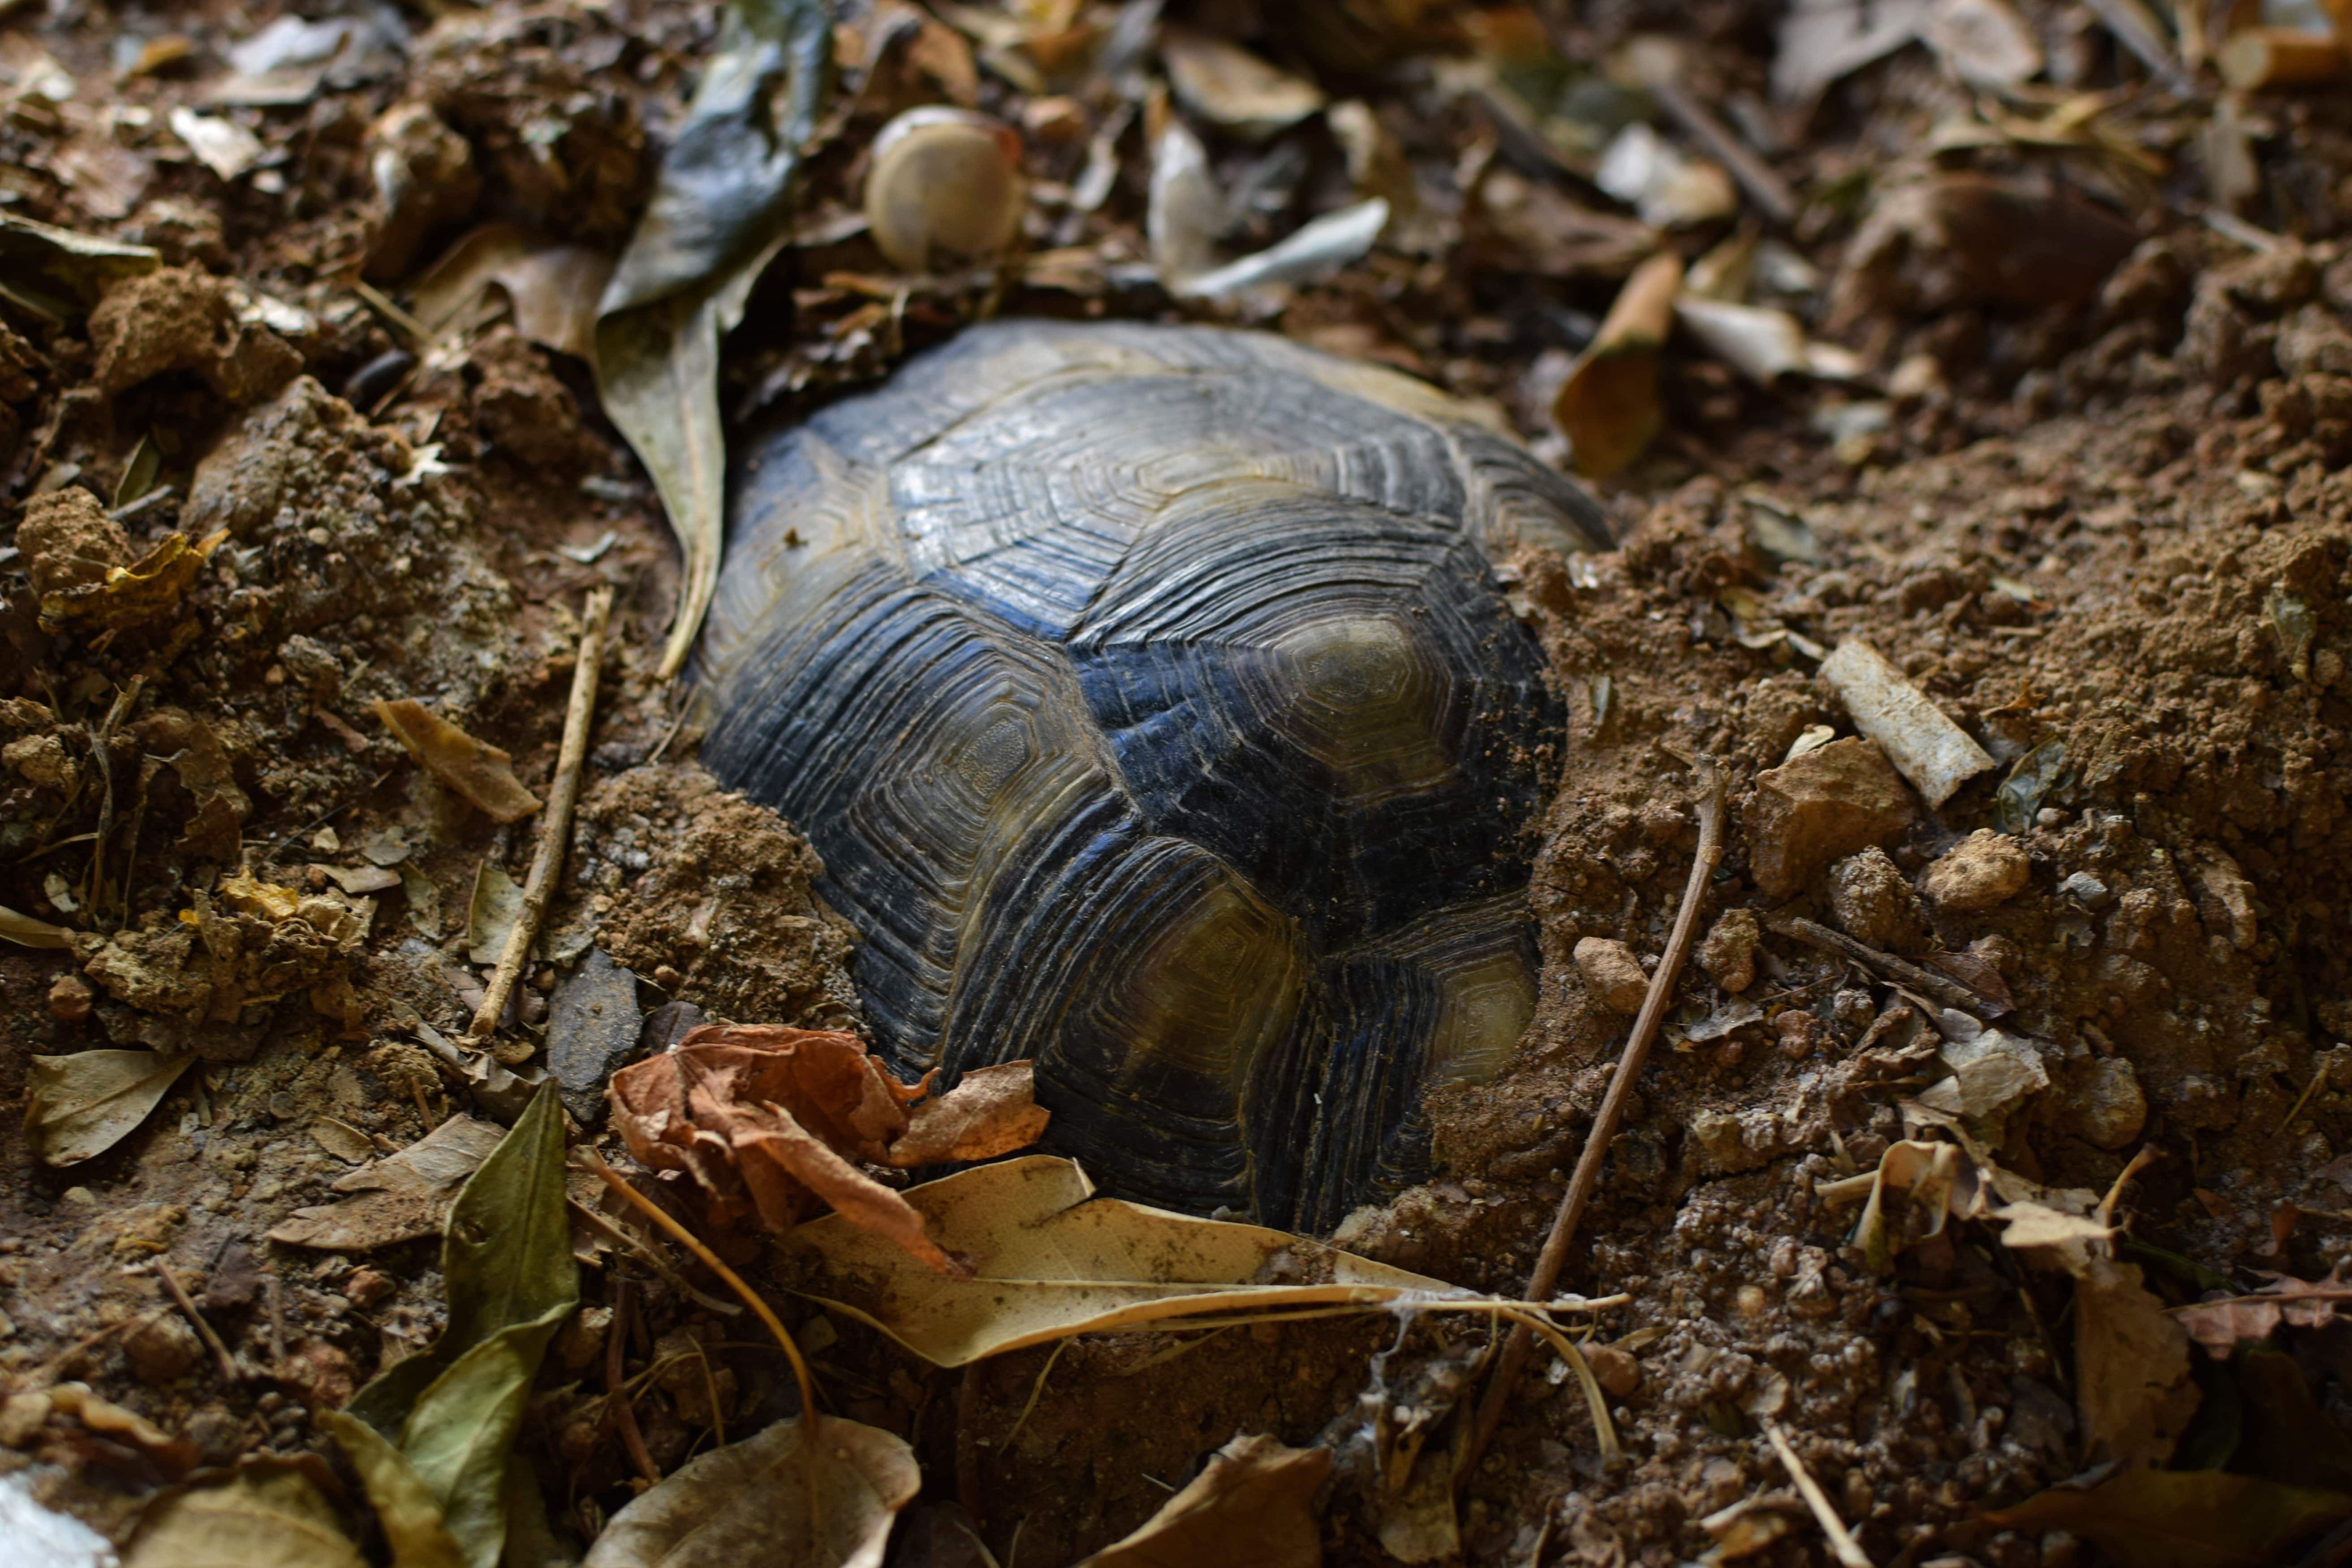 soins-alimentation-pour-tortues-terrestres-sortie-hibernation